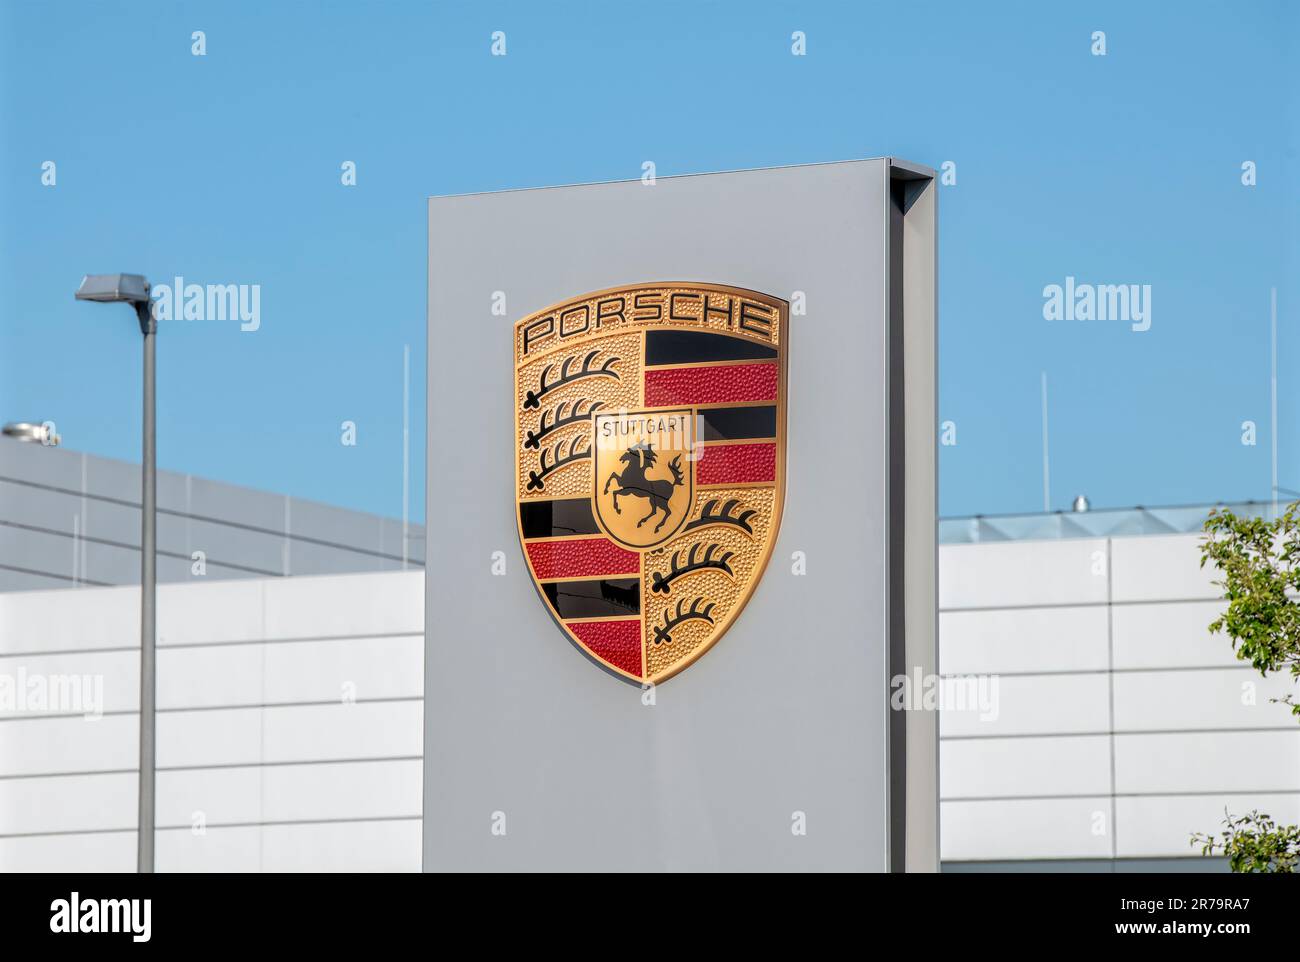 Logo des Autoherstellers Porsche auf einem Autohaus Stockfoto